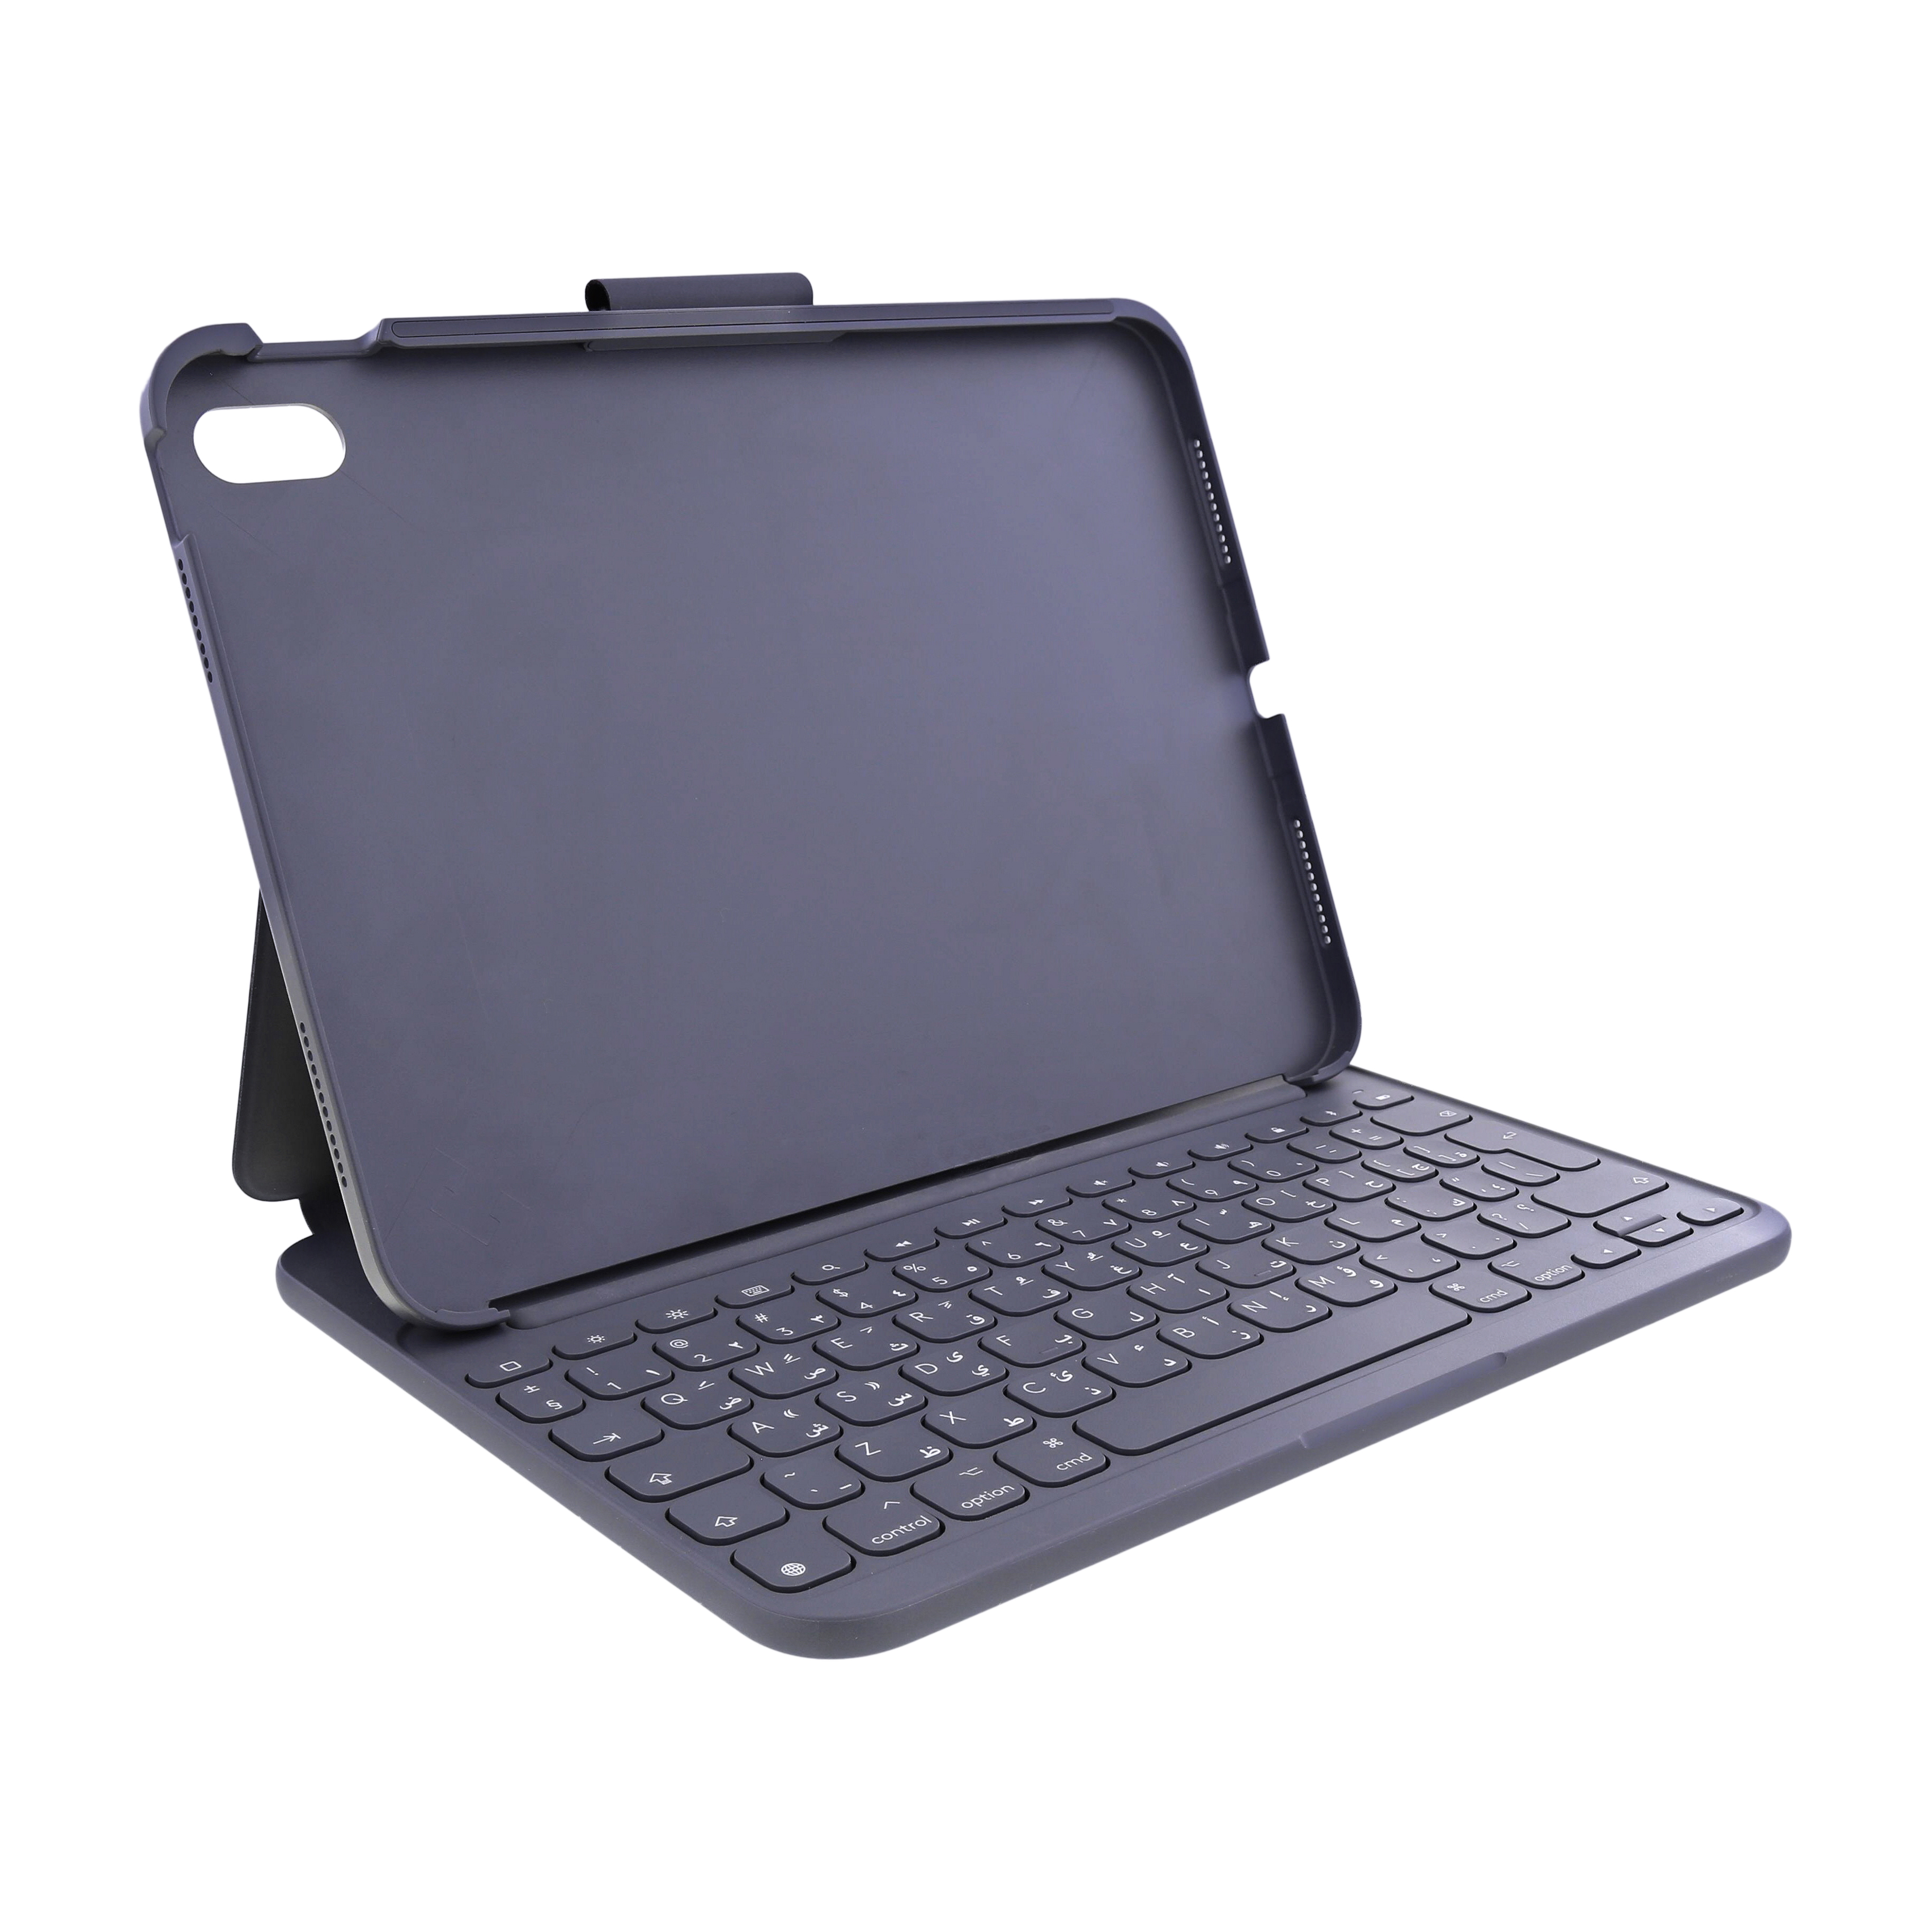 Logitech 920-011414 Slim Folio Keyboard Case for iPad (10th Gen) with Integrated Bluetooth Wireless Keyboard - Oxford Grey (Arabic/English)